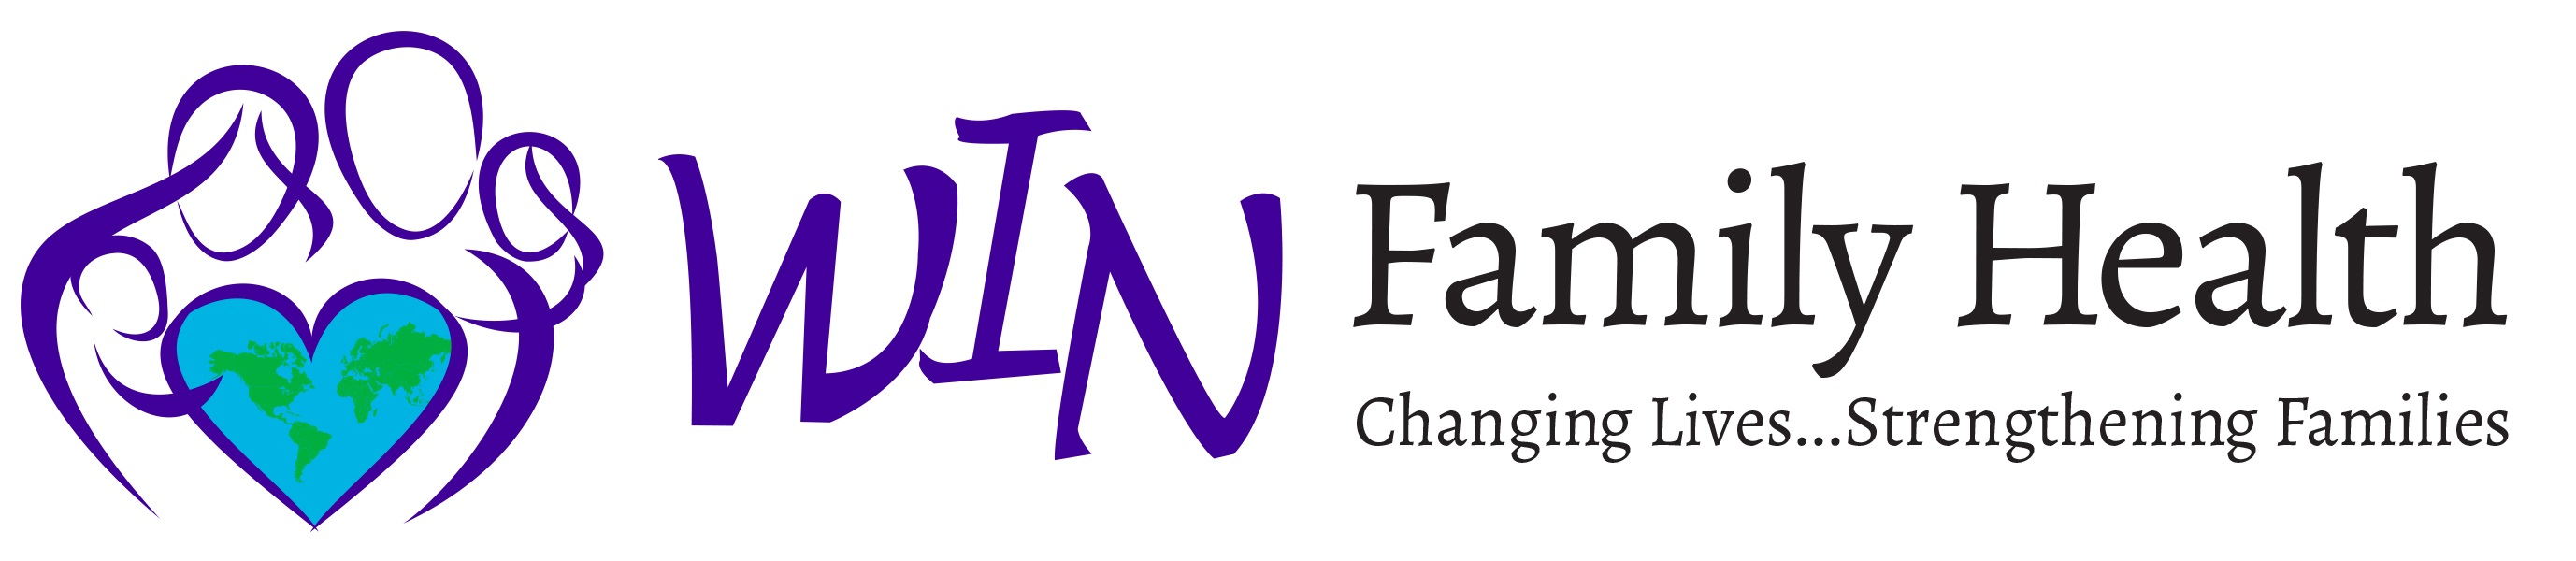 WIN Family Health logo